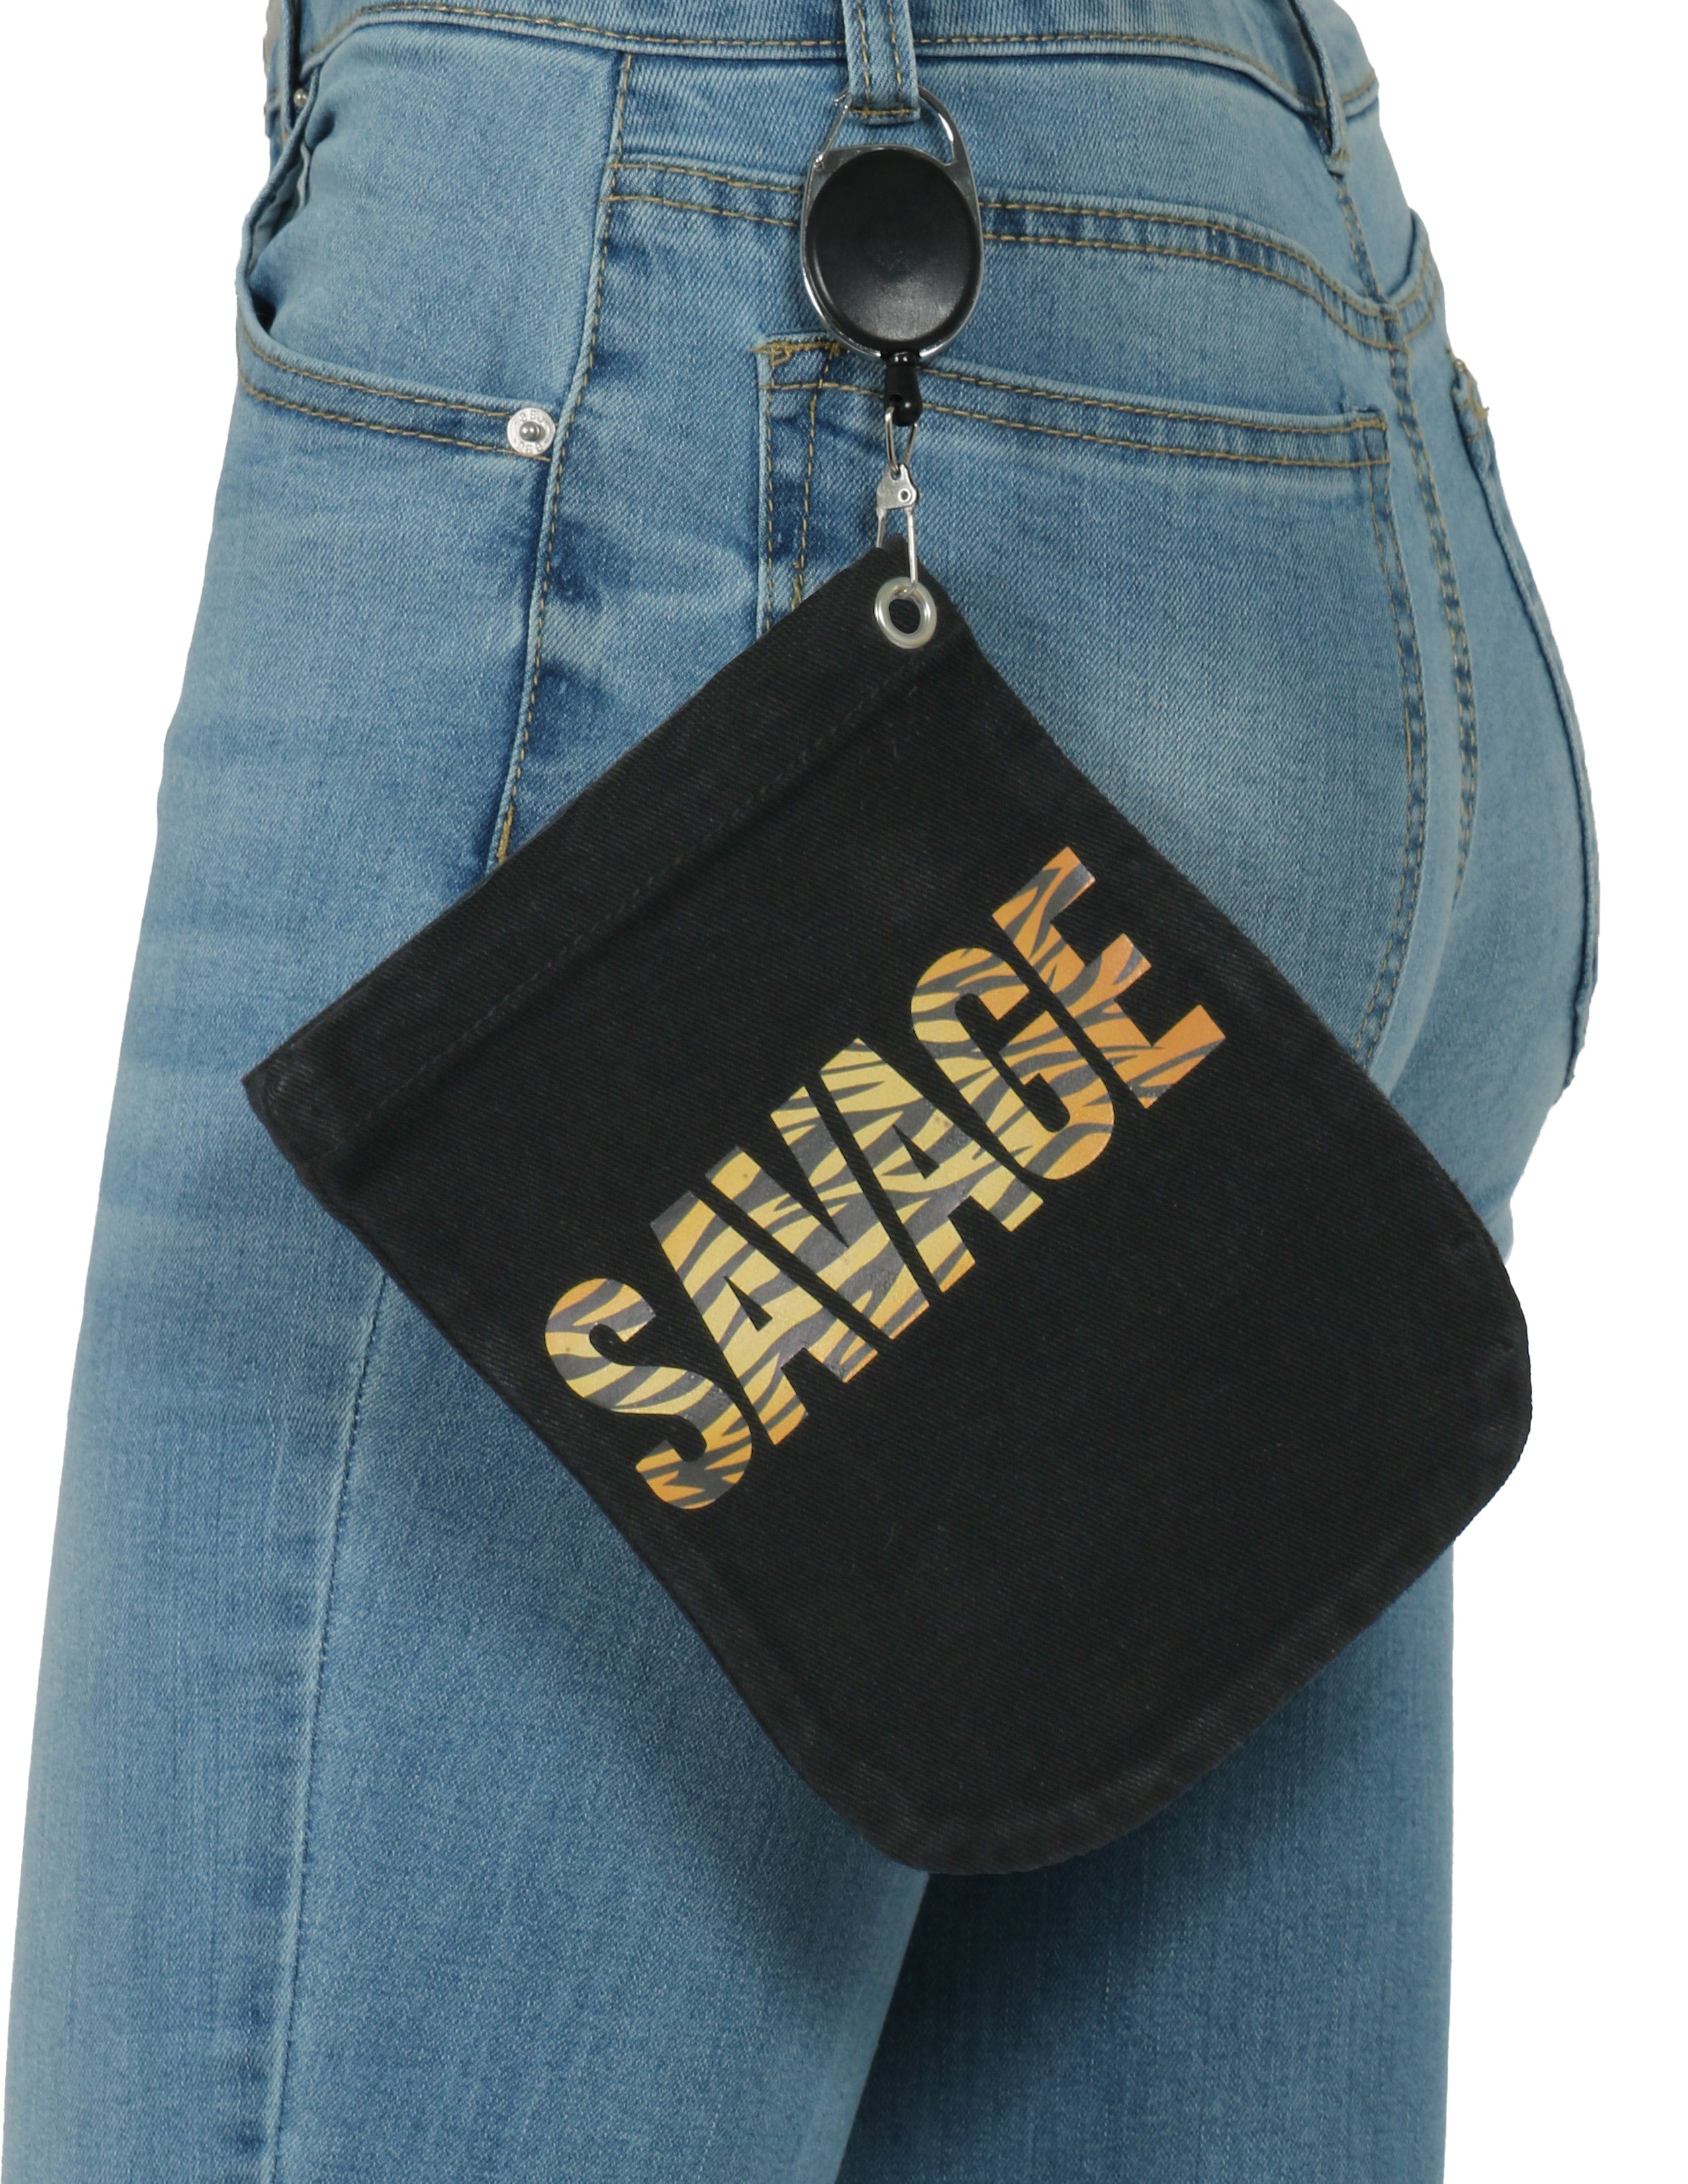 Savage Safety Mitt Bag